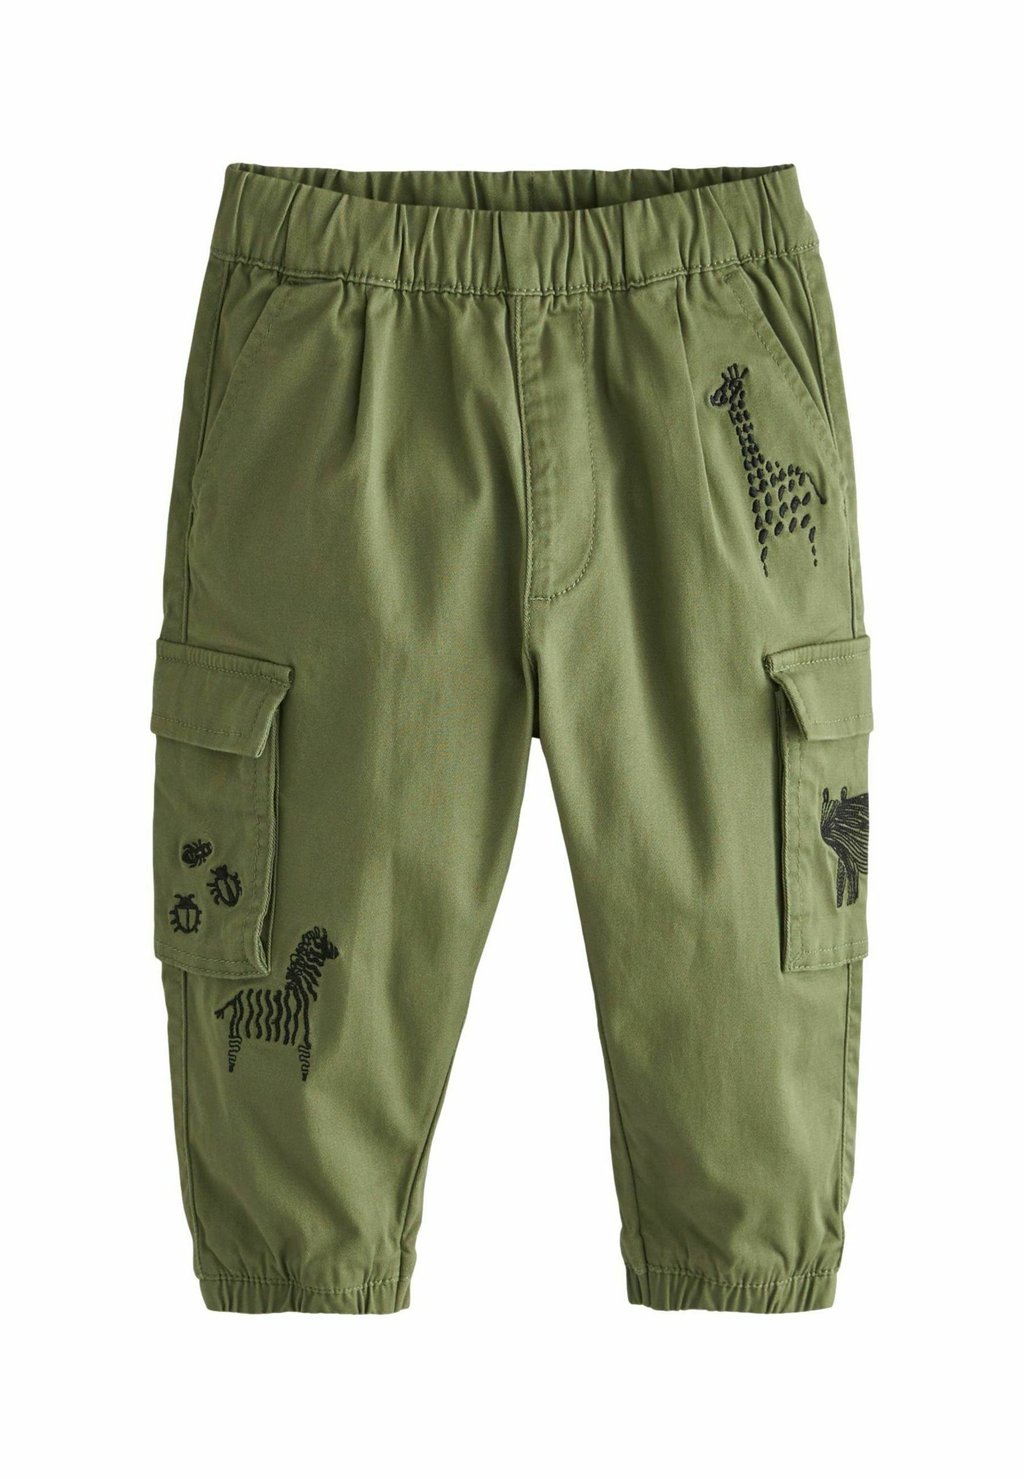 спортивные брюки next цвет khaki green camo Брюки-карго STANDARD Next, цвет khaki green animals